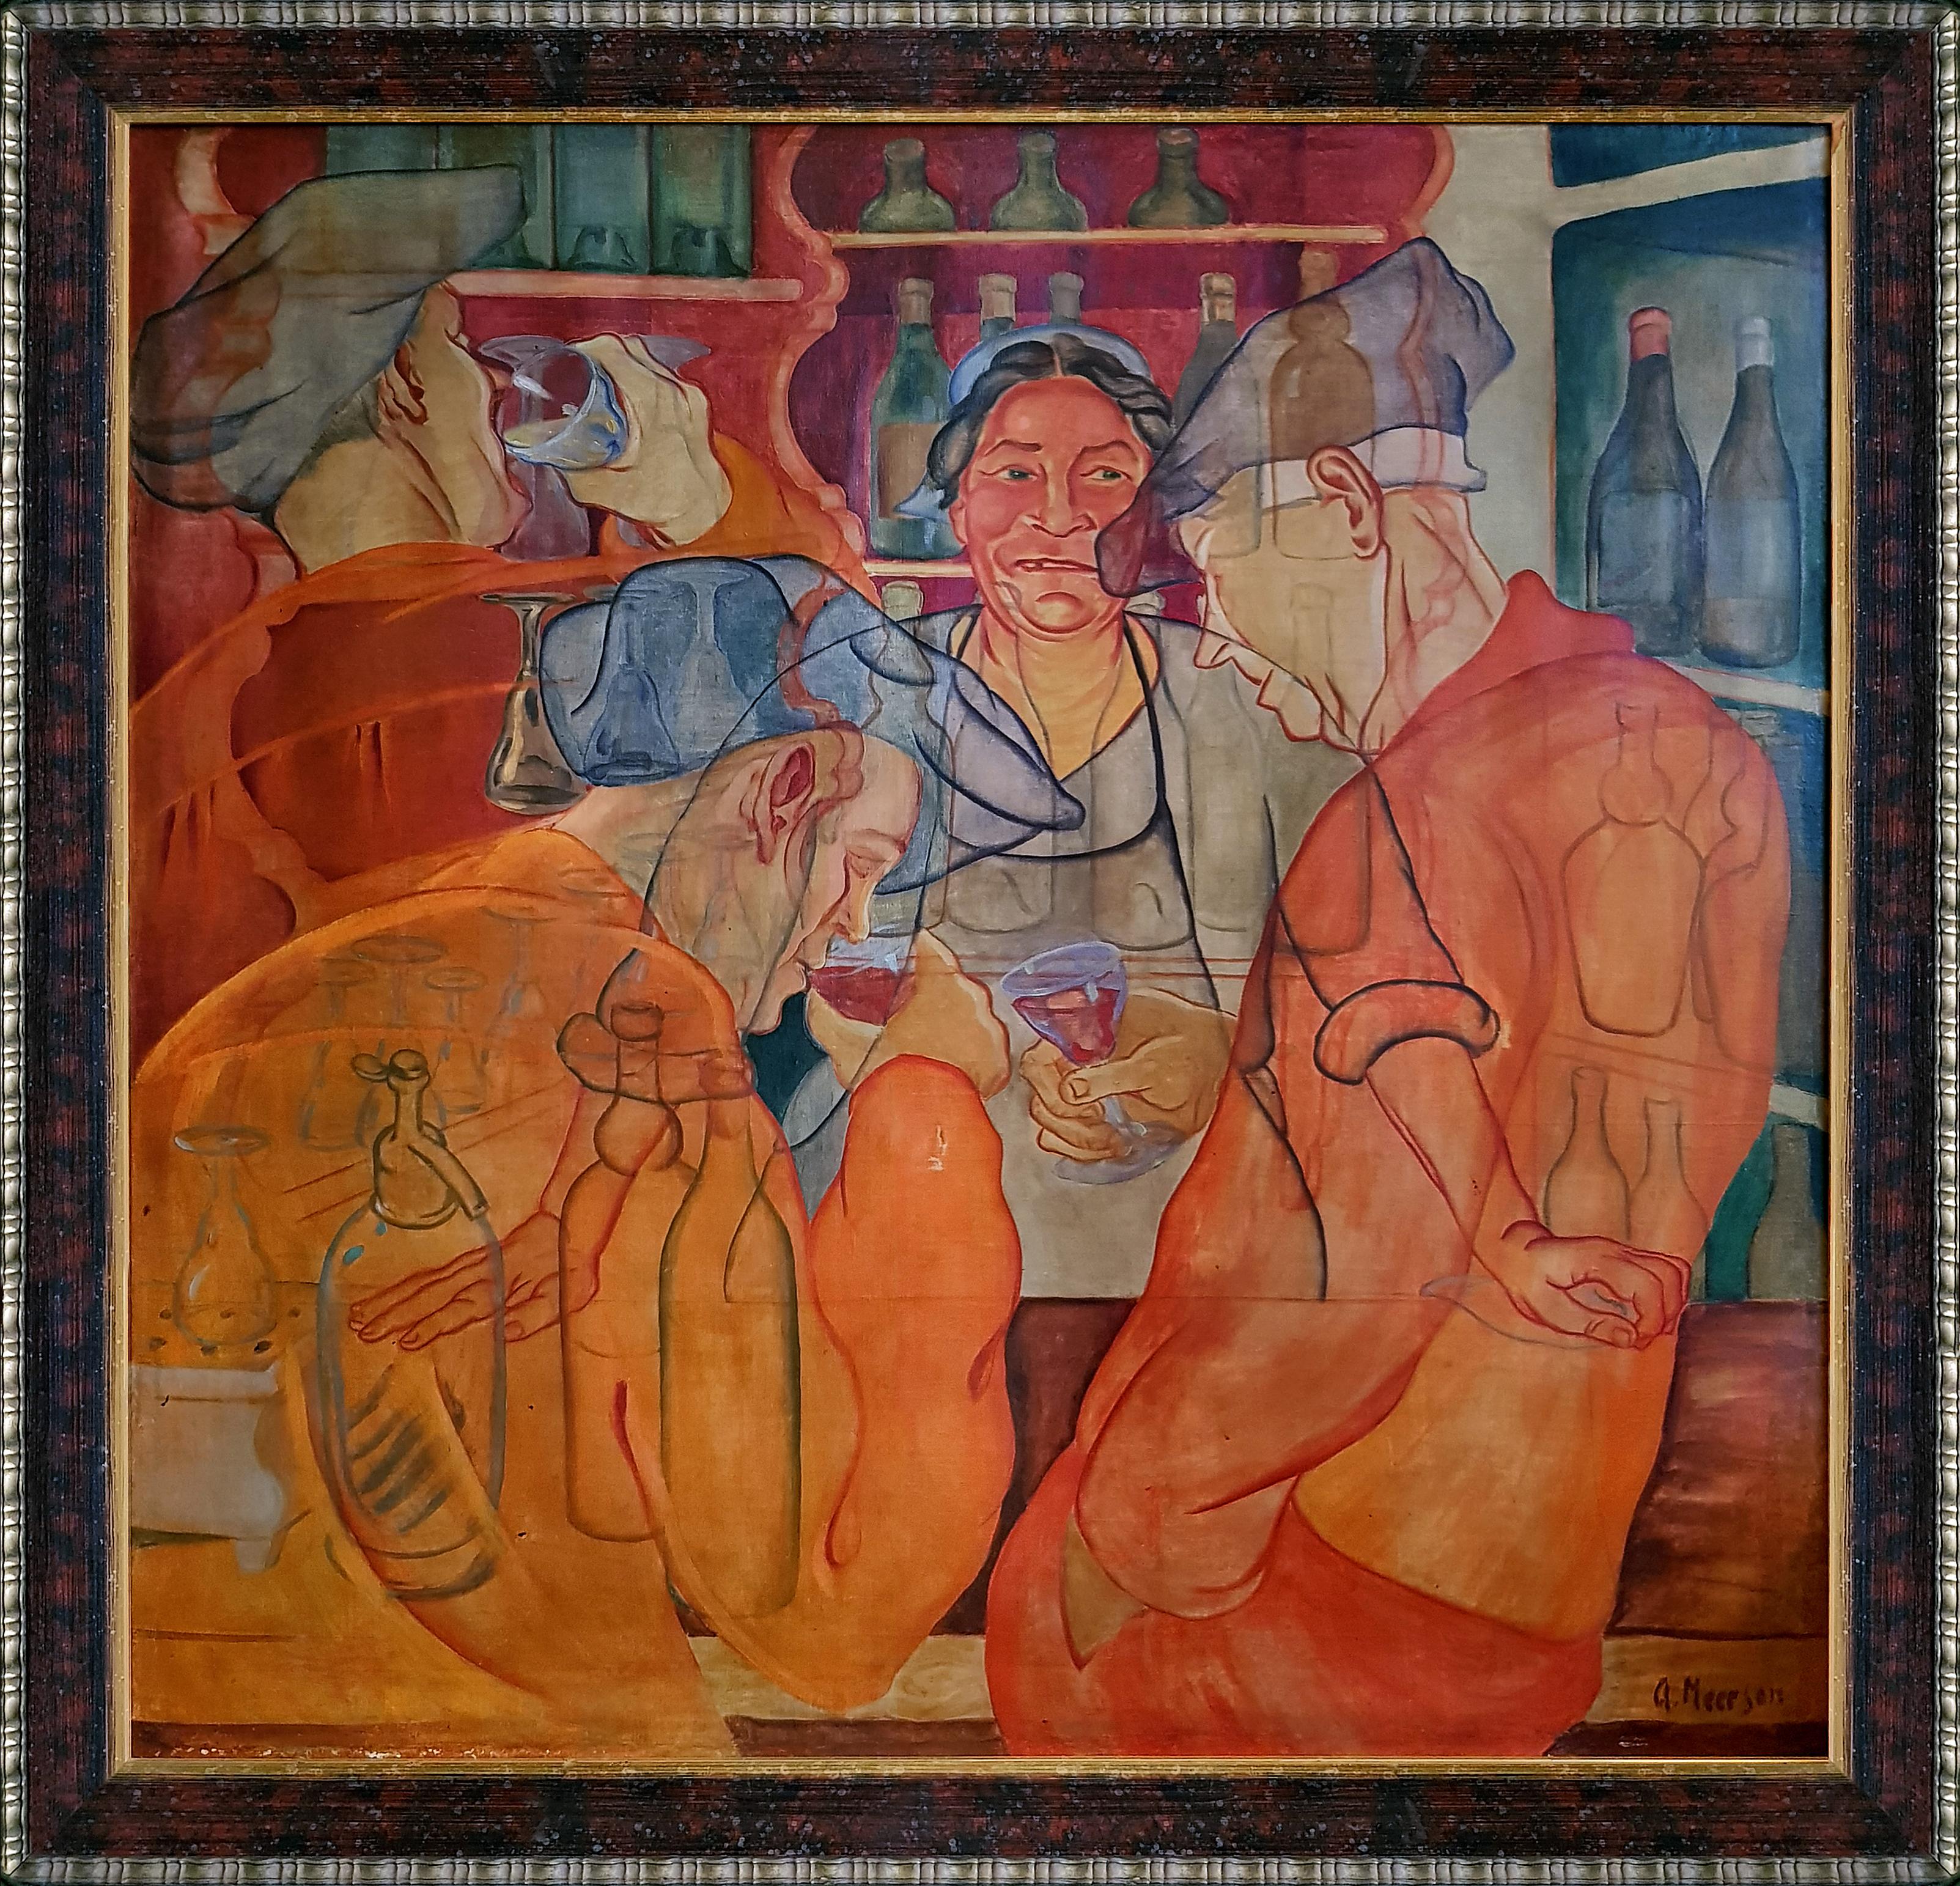 Peinture à l'huile sur toile - In The Pub - Interior Figurative - Rouge, orange, bleu, gris et blanc